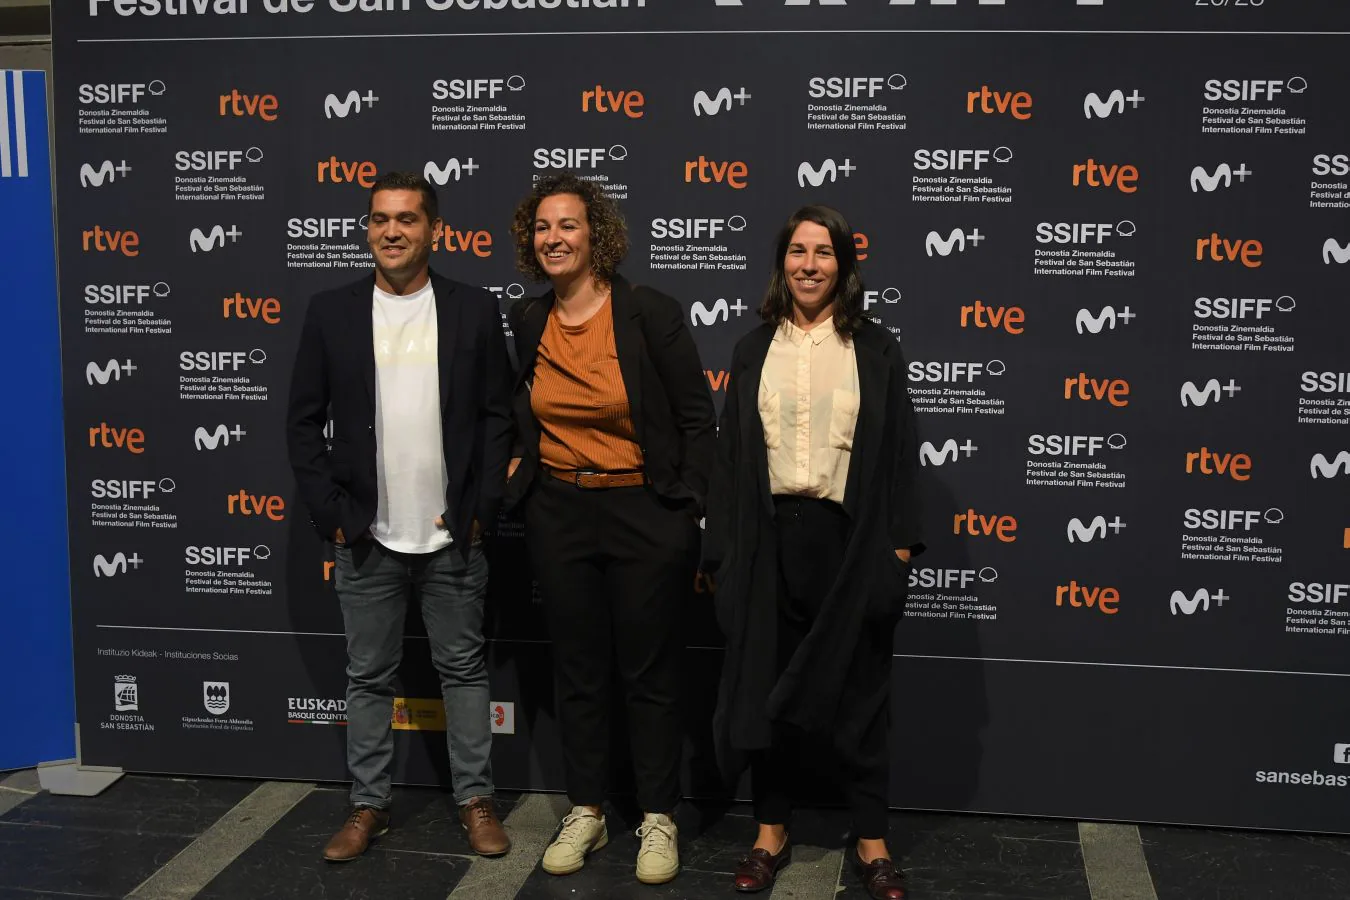 El documental 'Sua-Irabazi arte' que relata los días previos a la victoria de la Real Sociedad en la Copa de la Reina ha tenido un exitoso estreno en el Velódromo en el marco del Festival de Cine de San Sebastián